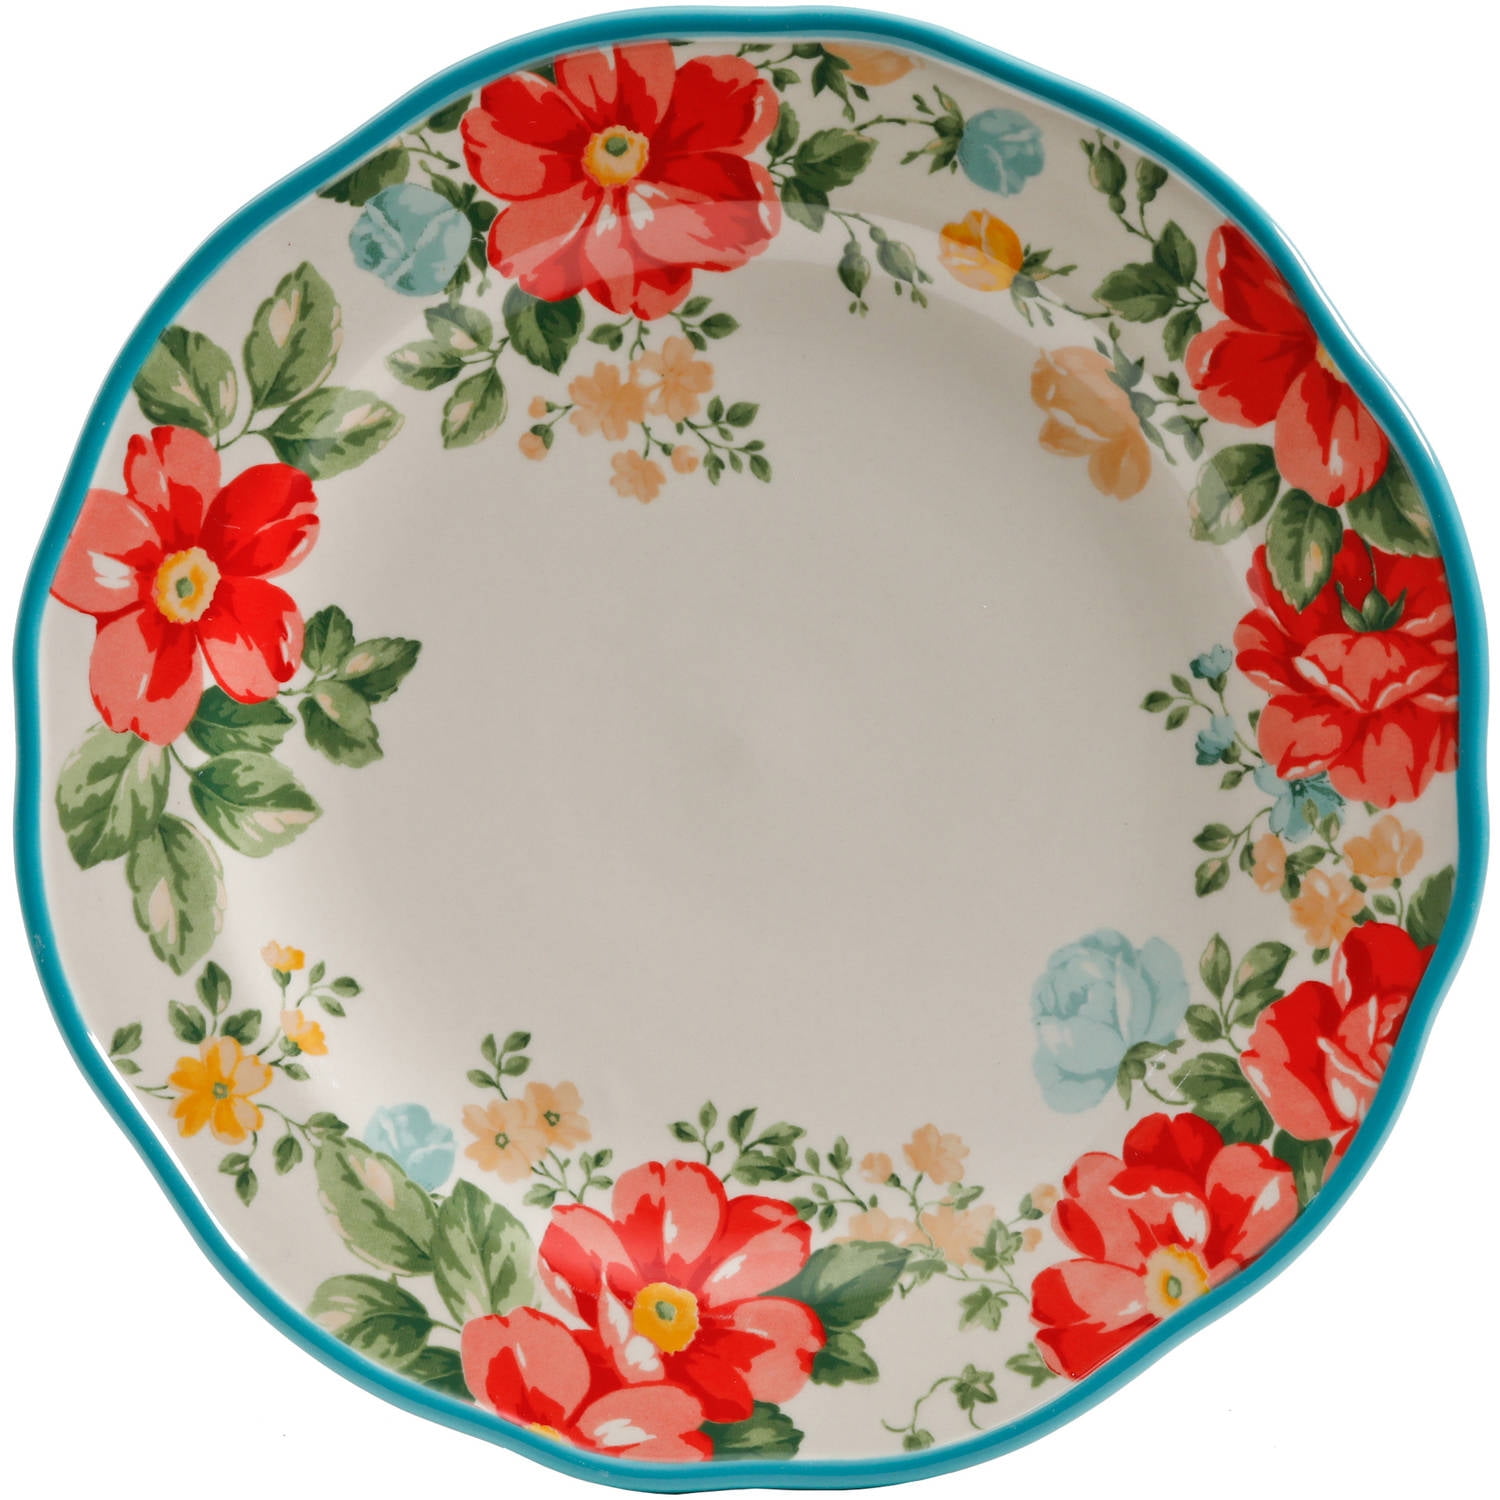 Vintage Floral 12-Piece Dinnerware Set, Teal Kitchen Accessories